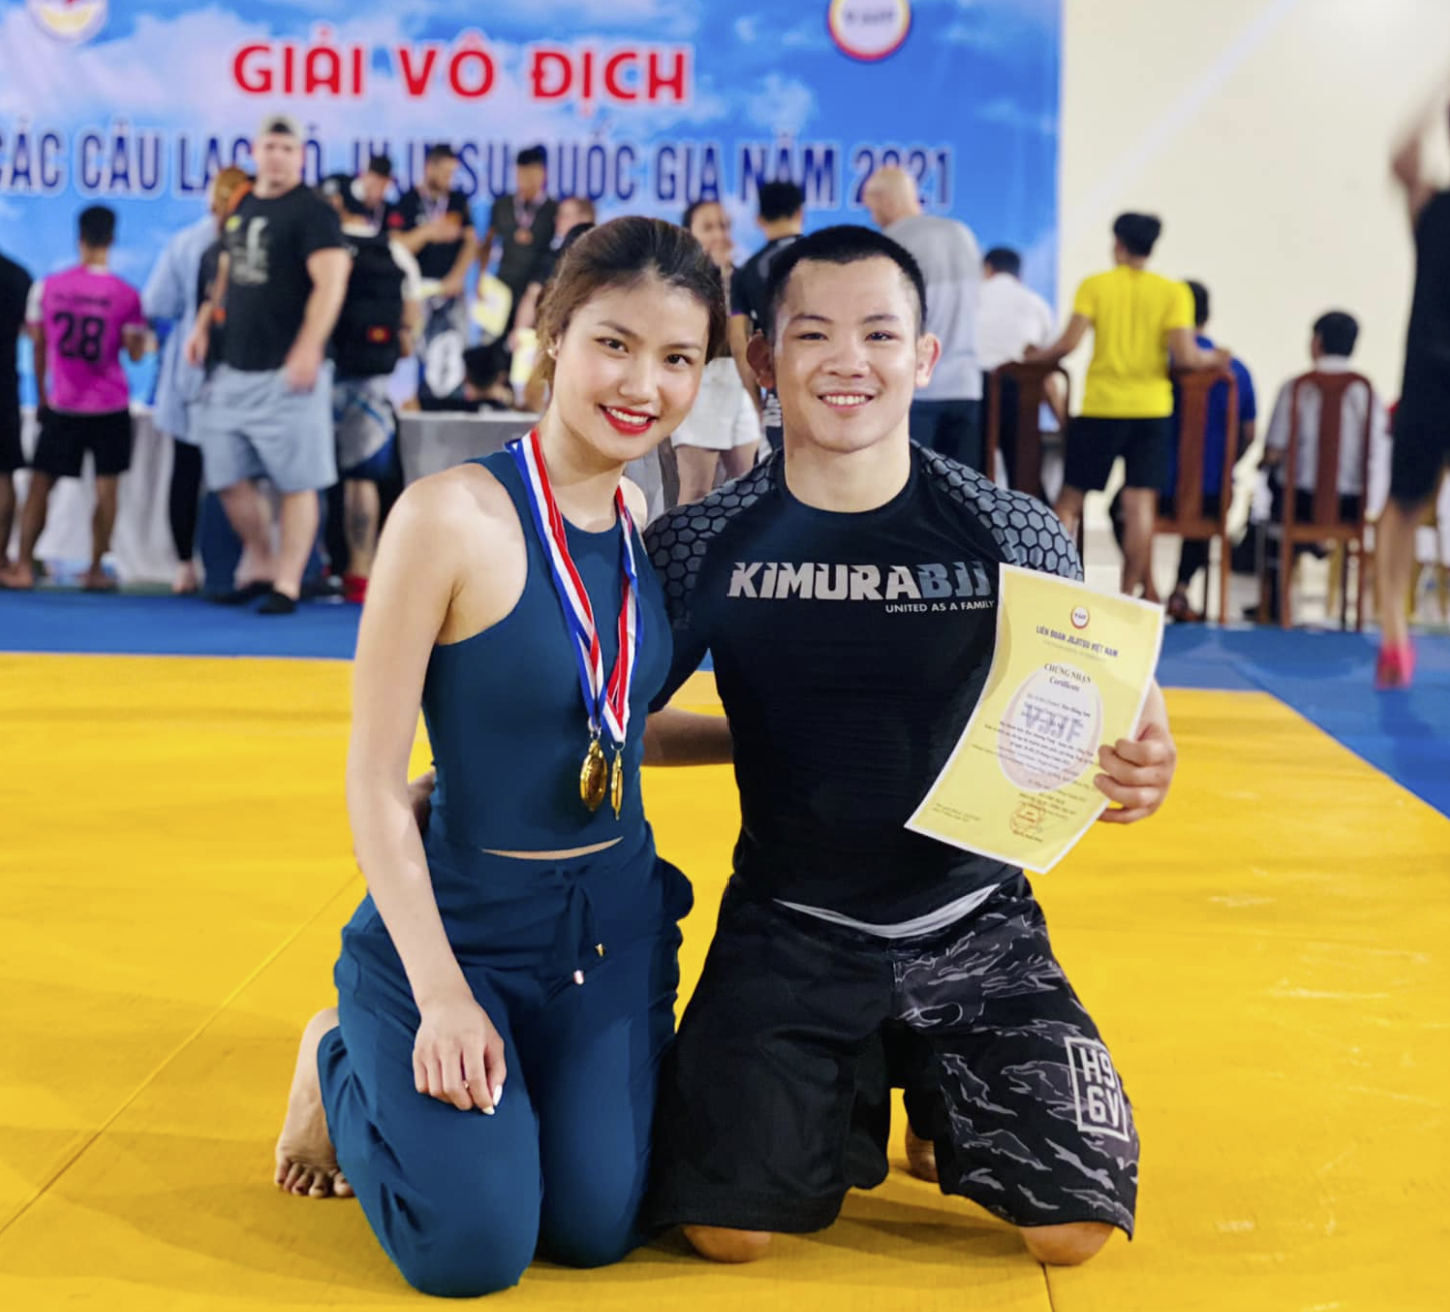 Giải vô địch các CLB Ju-jitsu toàn quốc 2021: Kỳ vọng các nhân tố tham dự SEA Games 31 - Ảnh 2